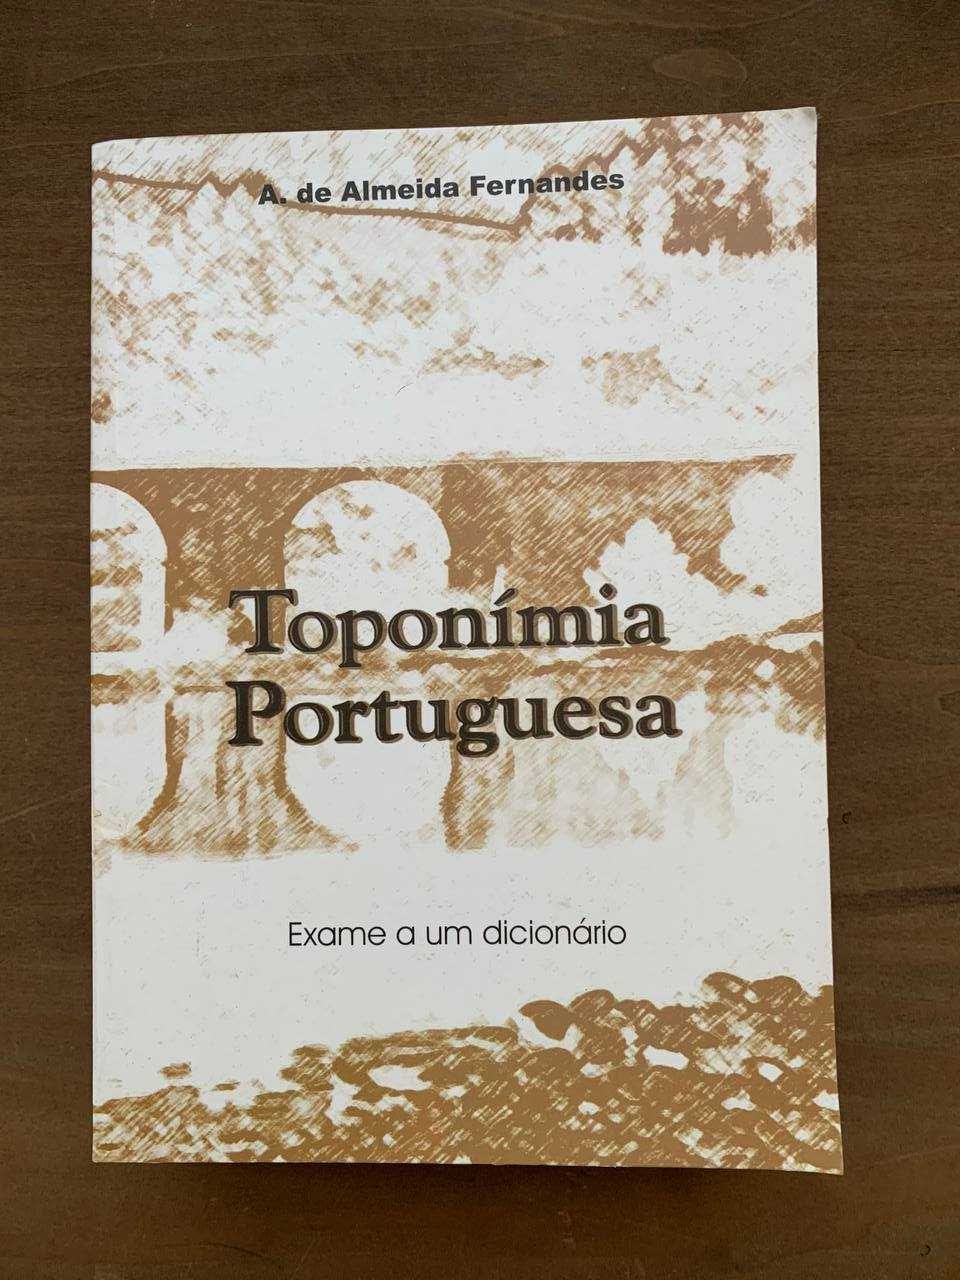 A. de Almeida Fernandes - Toponímia Portuguesa: Exame a um dicionário